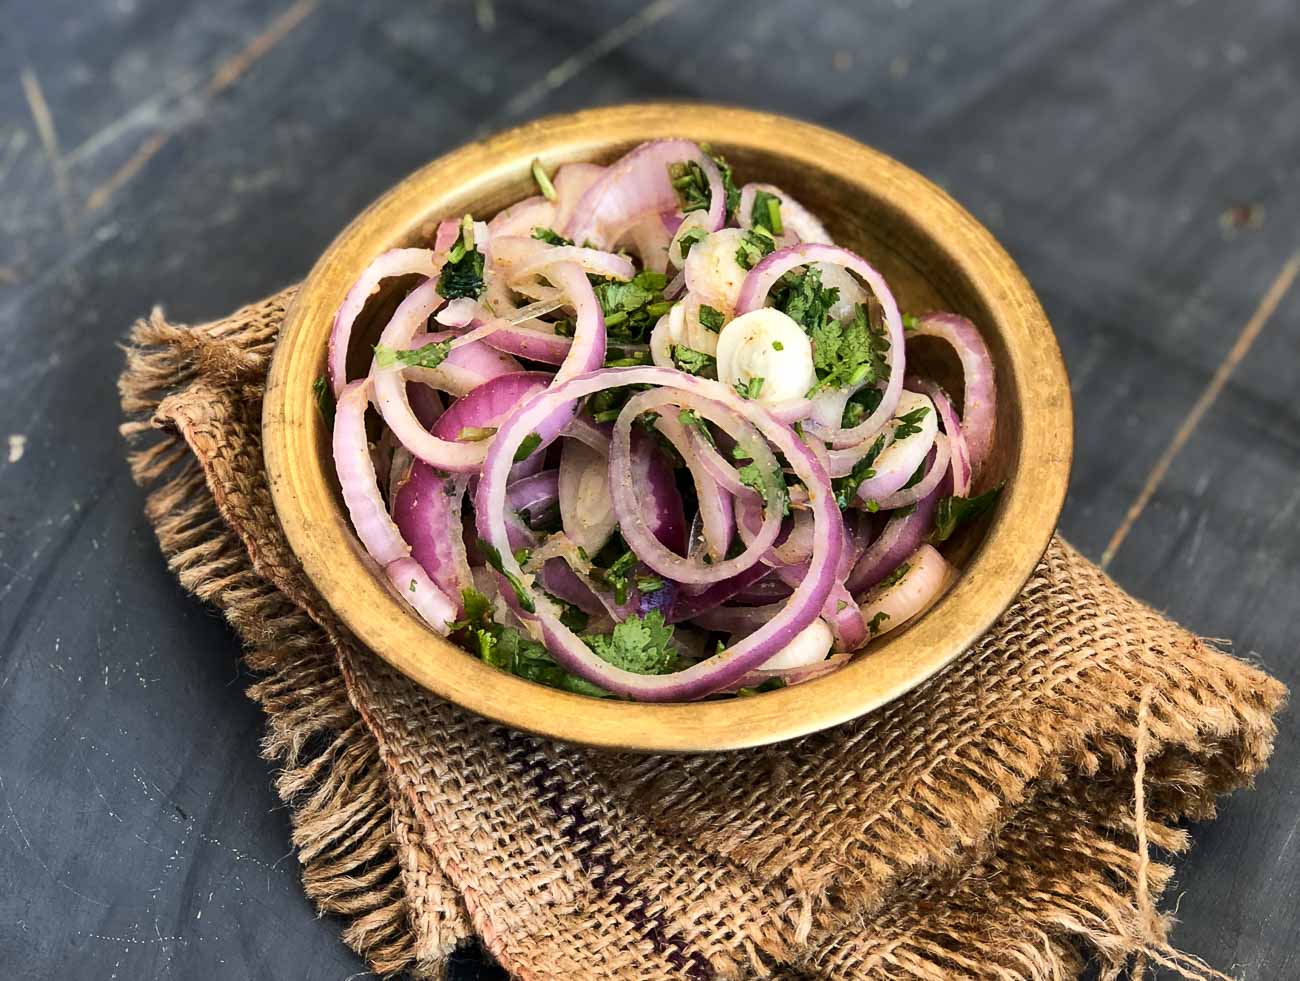 पुदीना प्याज़ कचुम्बर सलाद रेसिपी - Pudina Pyaz Kachumber Salad Recipe